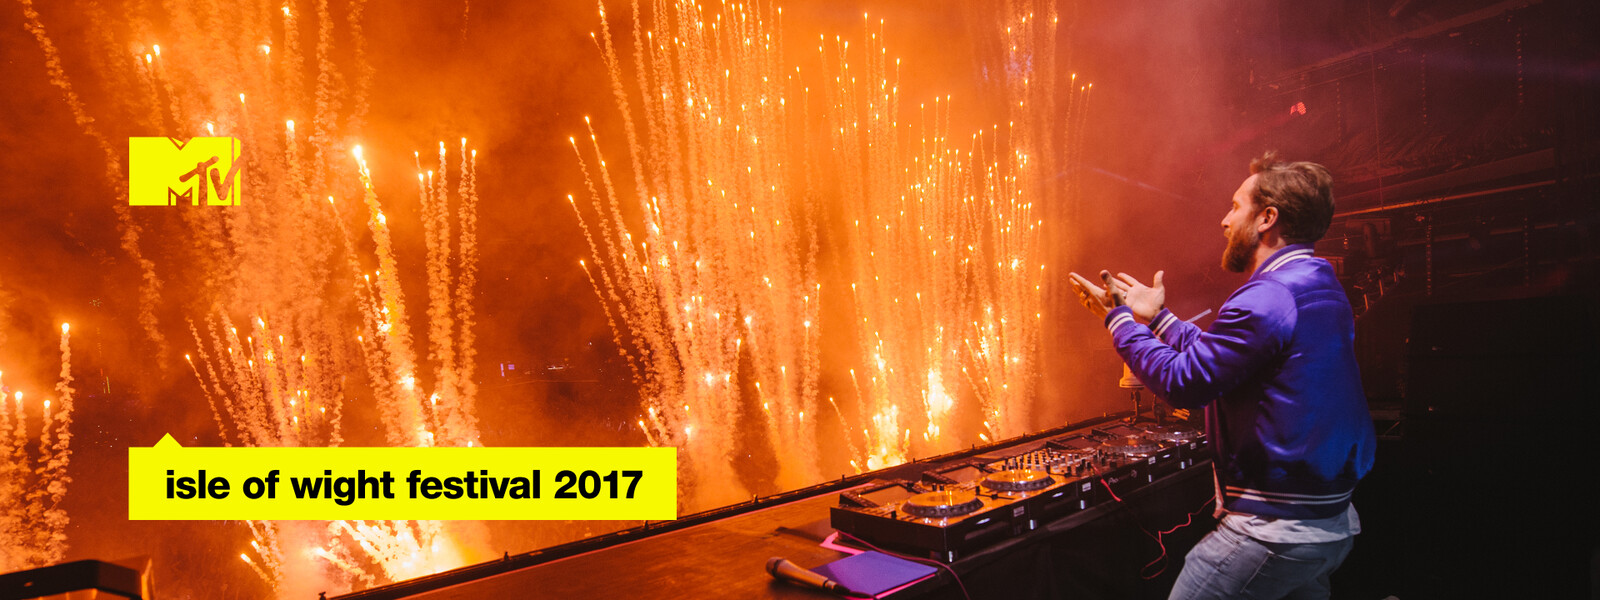 Isle of Wight Festival(ワイト島ロックフェスティバル) 2017の動画 - Isle of Wight Festival(ワイト島ロックフェスティバル) 2016